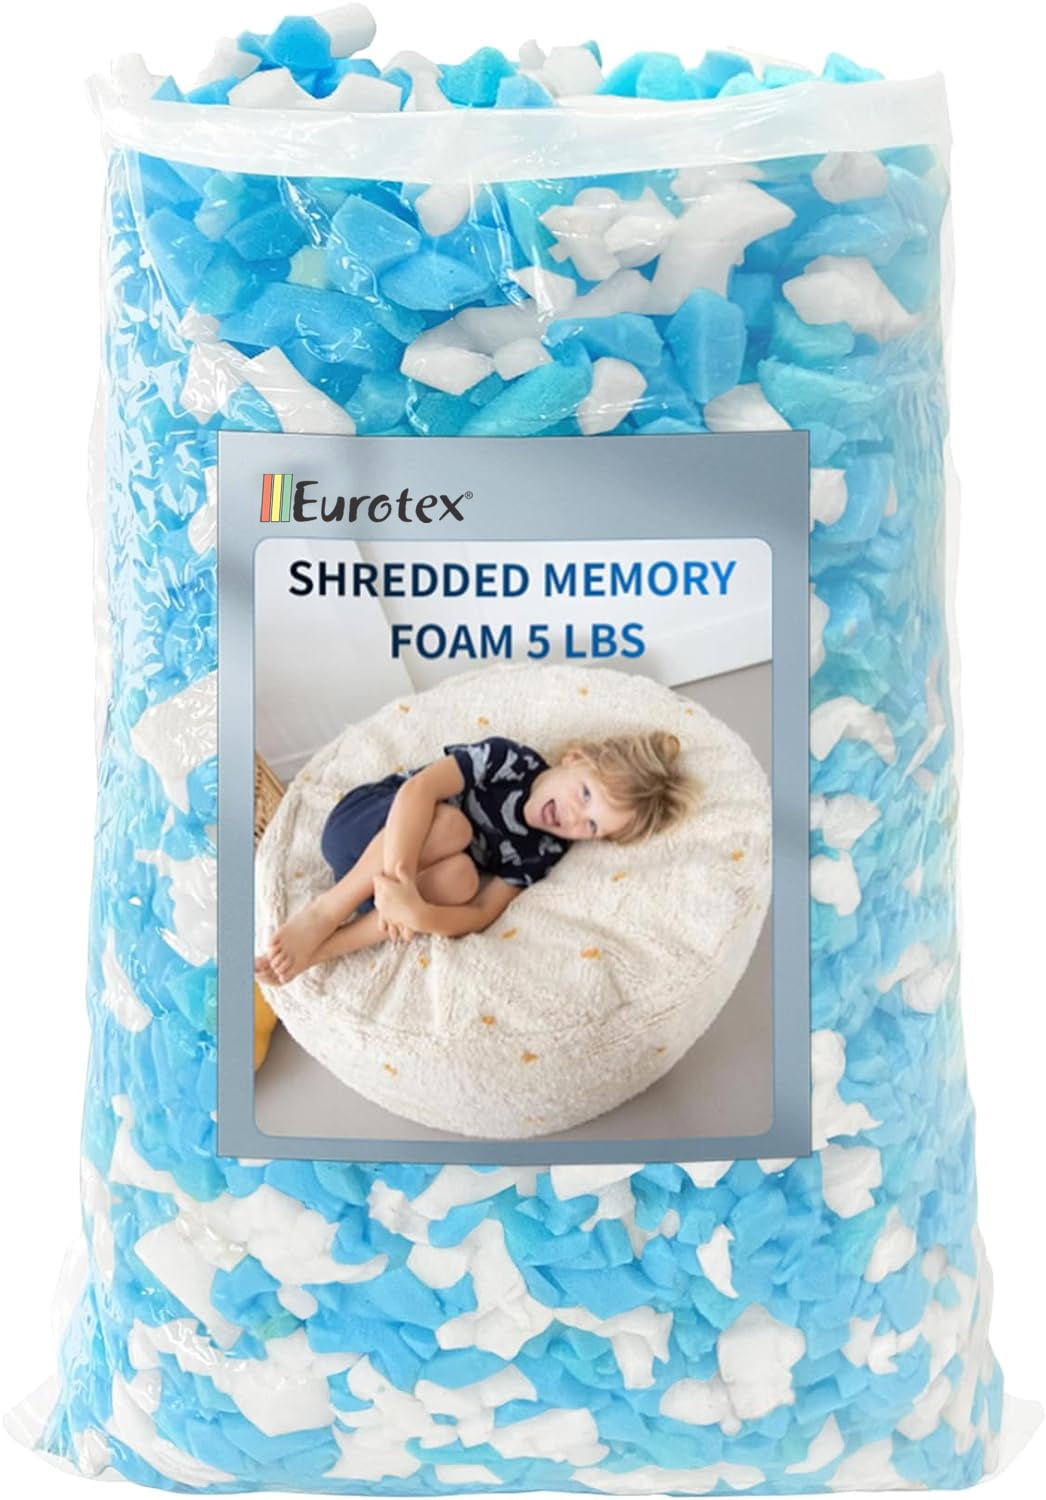 Shredded Memory Foam